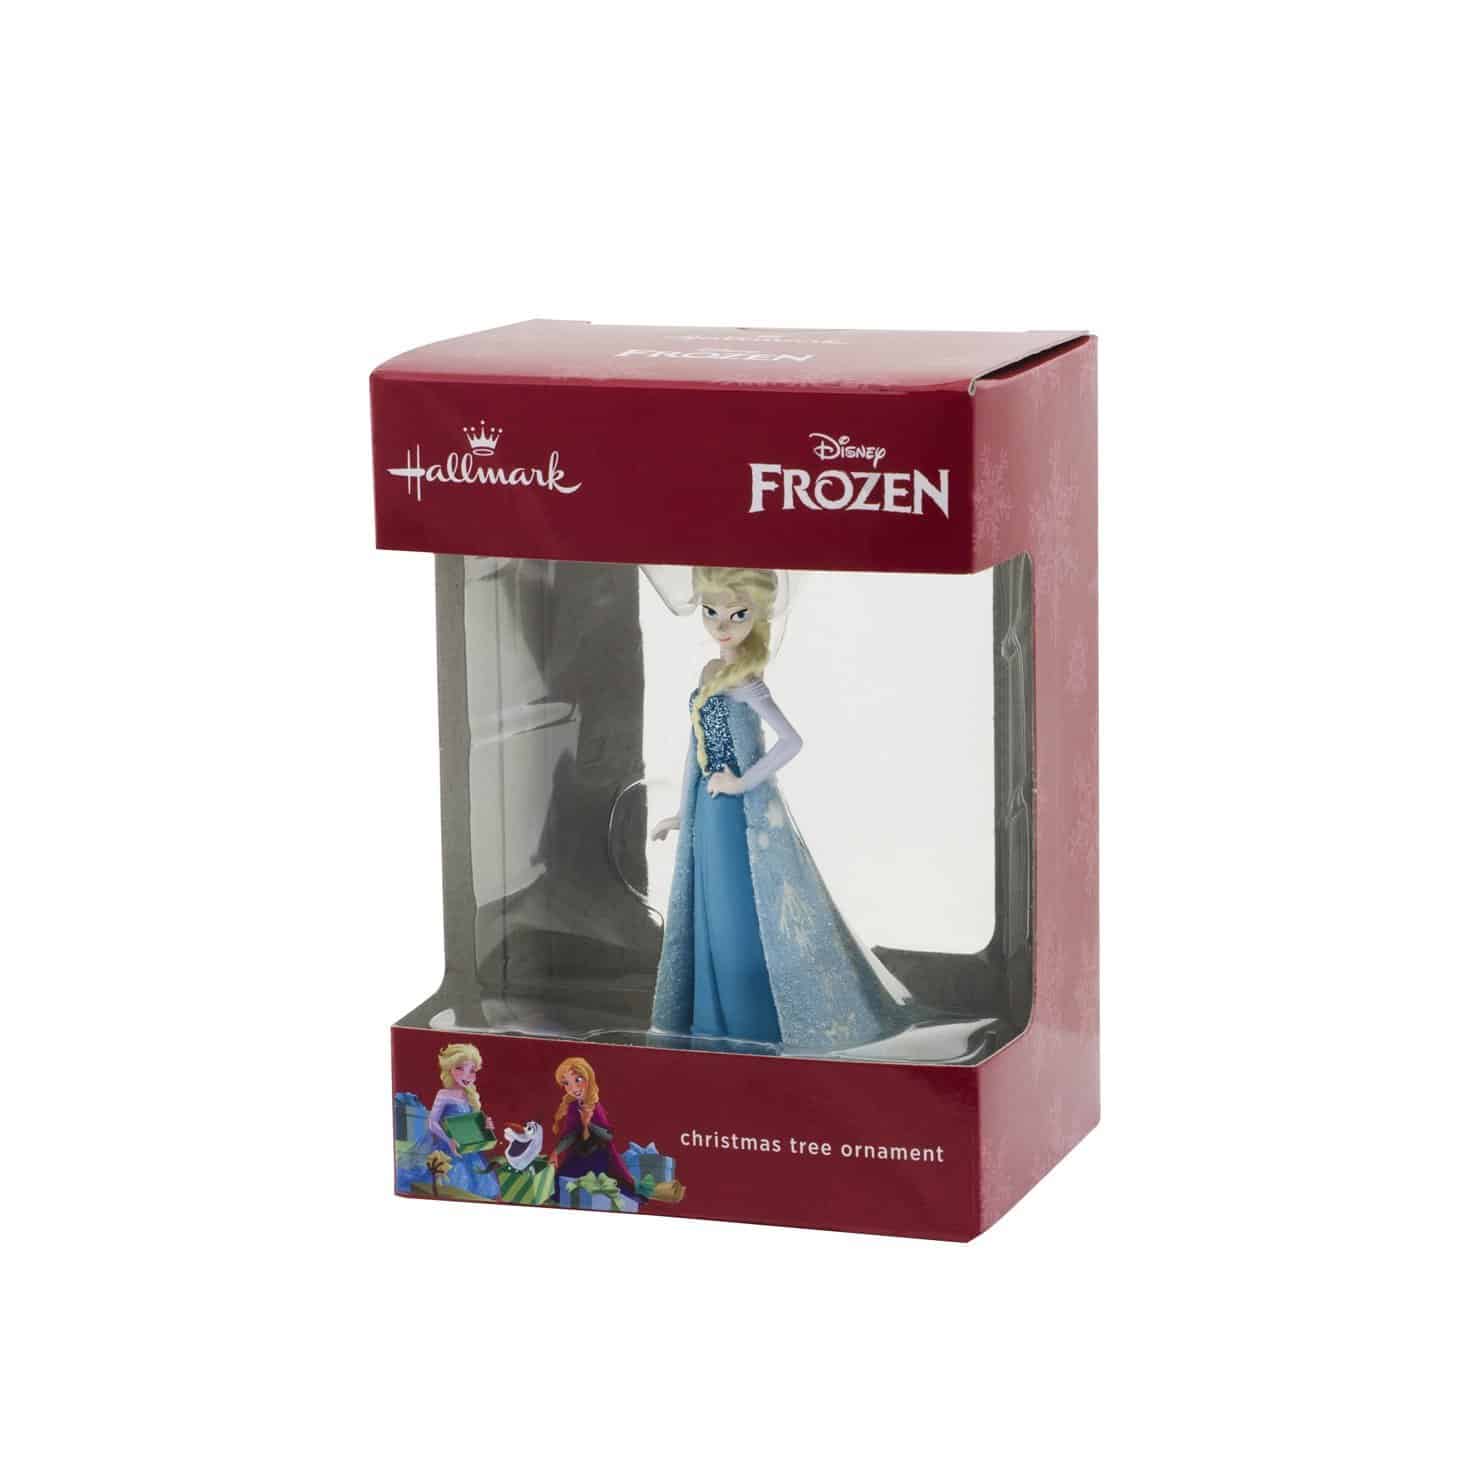 LIGHTNING DEAL ALERT! Hallmark Disney Frozen Elsa Holiday Ornament – 72% off